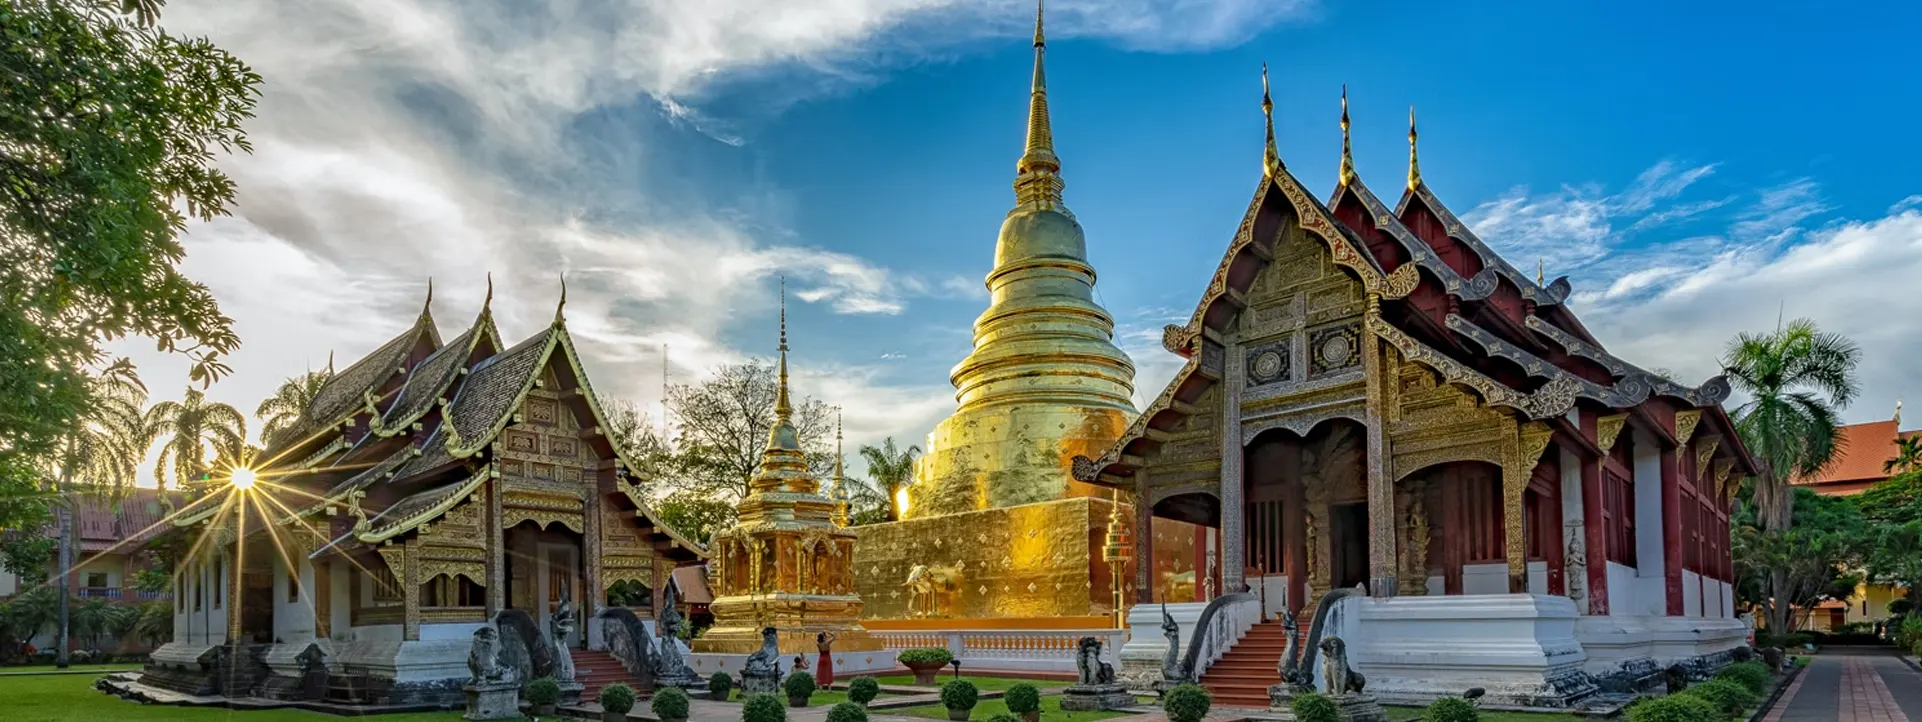 GOLDEN-TRIANGLE-THAILAND-Wat-Phra-Singh